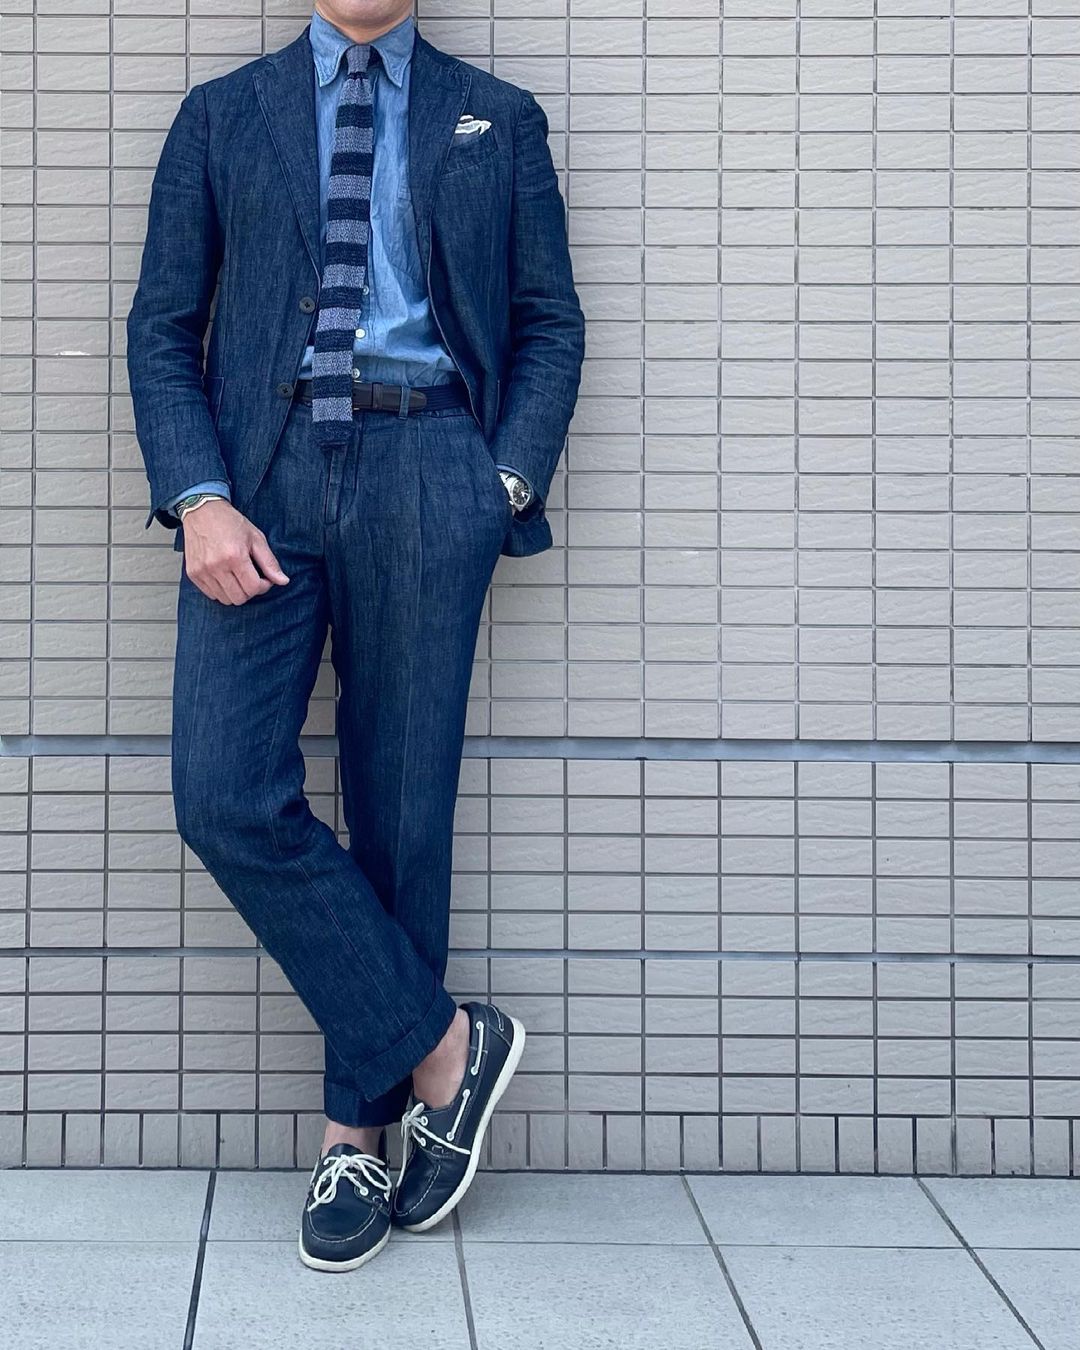 2 Pieces Denim Men Suits Blue Jacket+Pant Custom Made Suits Casual Formal Party Suit